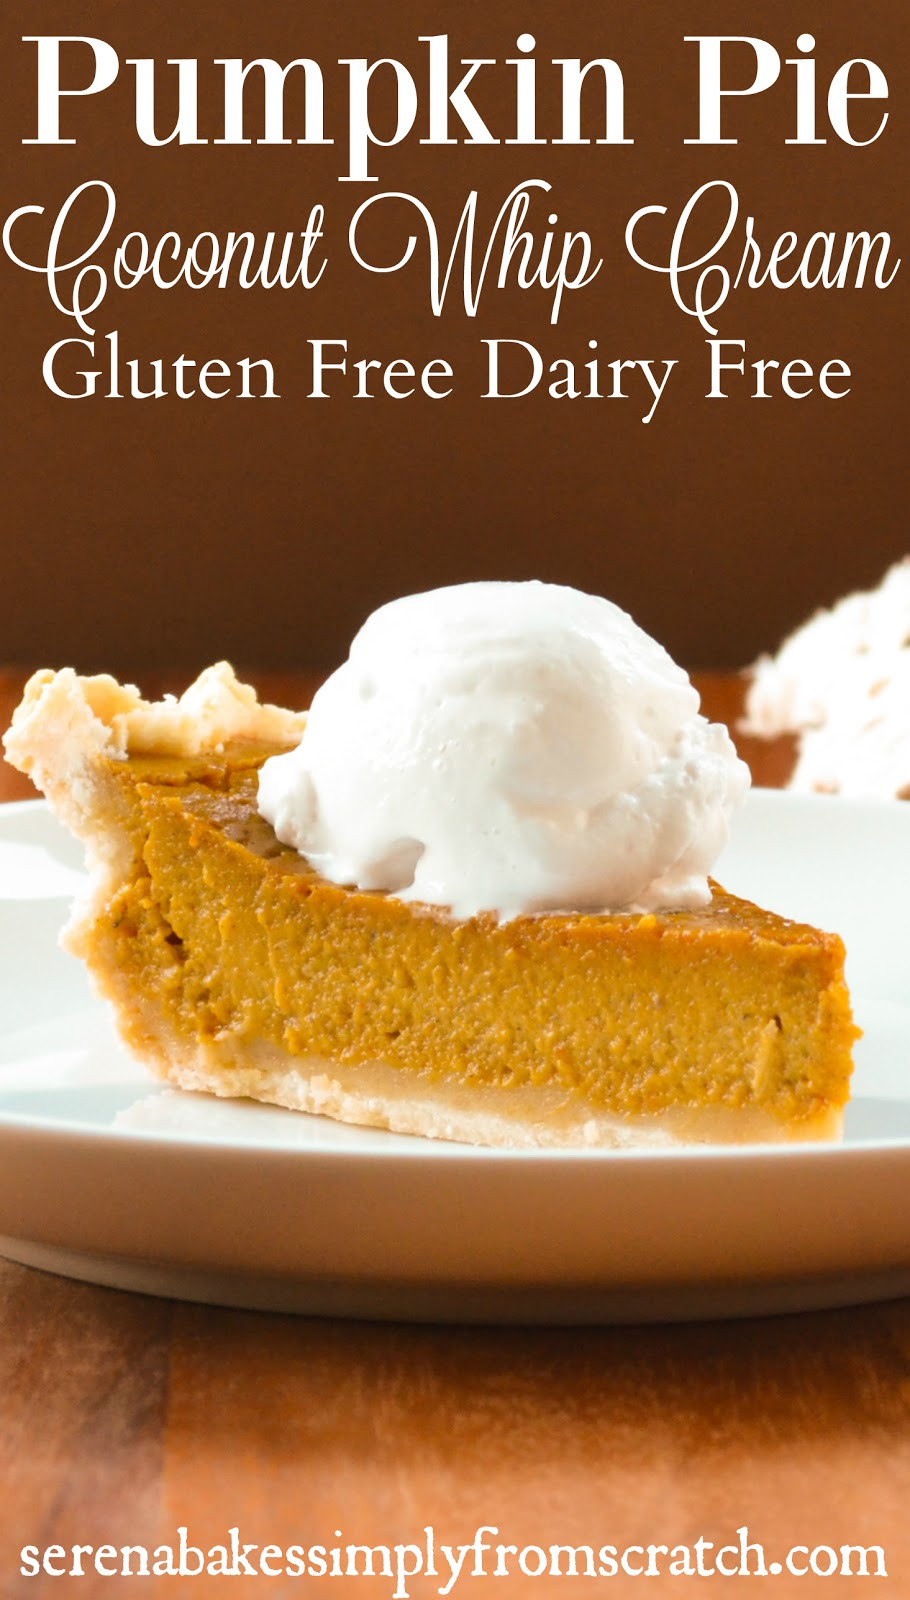 Gluten Free Dairy Free Pumpkin Pie
 Gluten Free Dairy Free Pumpkin Pie With Coconut Whip Cream